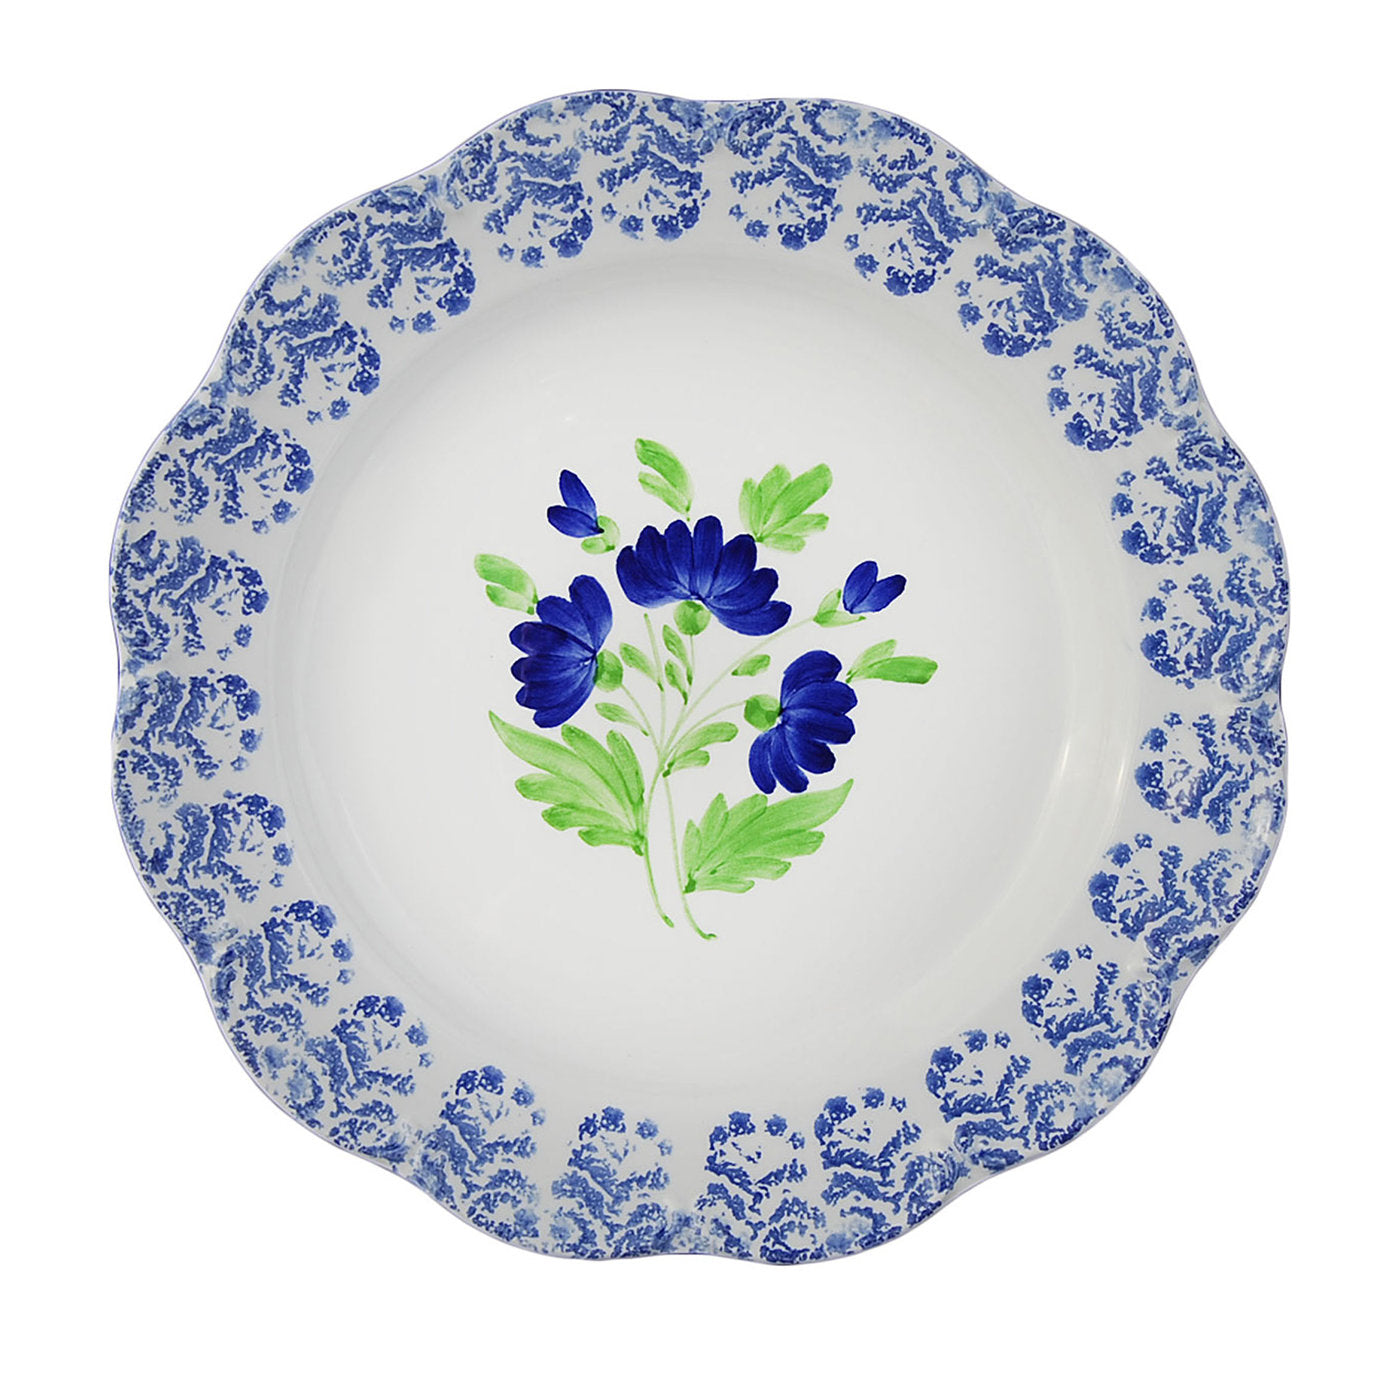 Juego de 4 platos de cerámica de flores rústicas - Vista principal